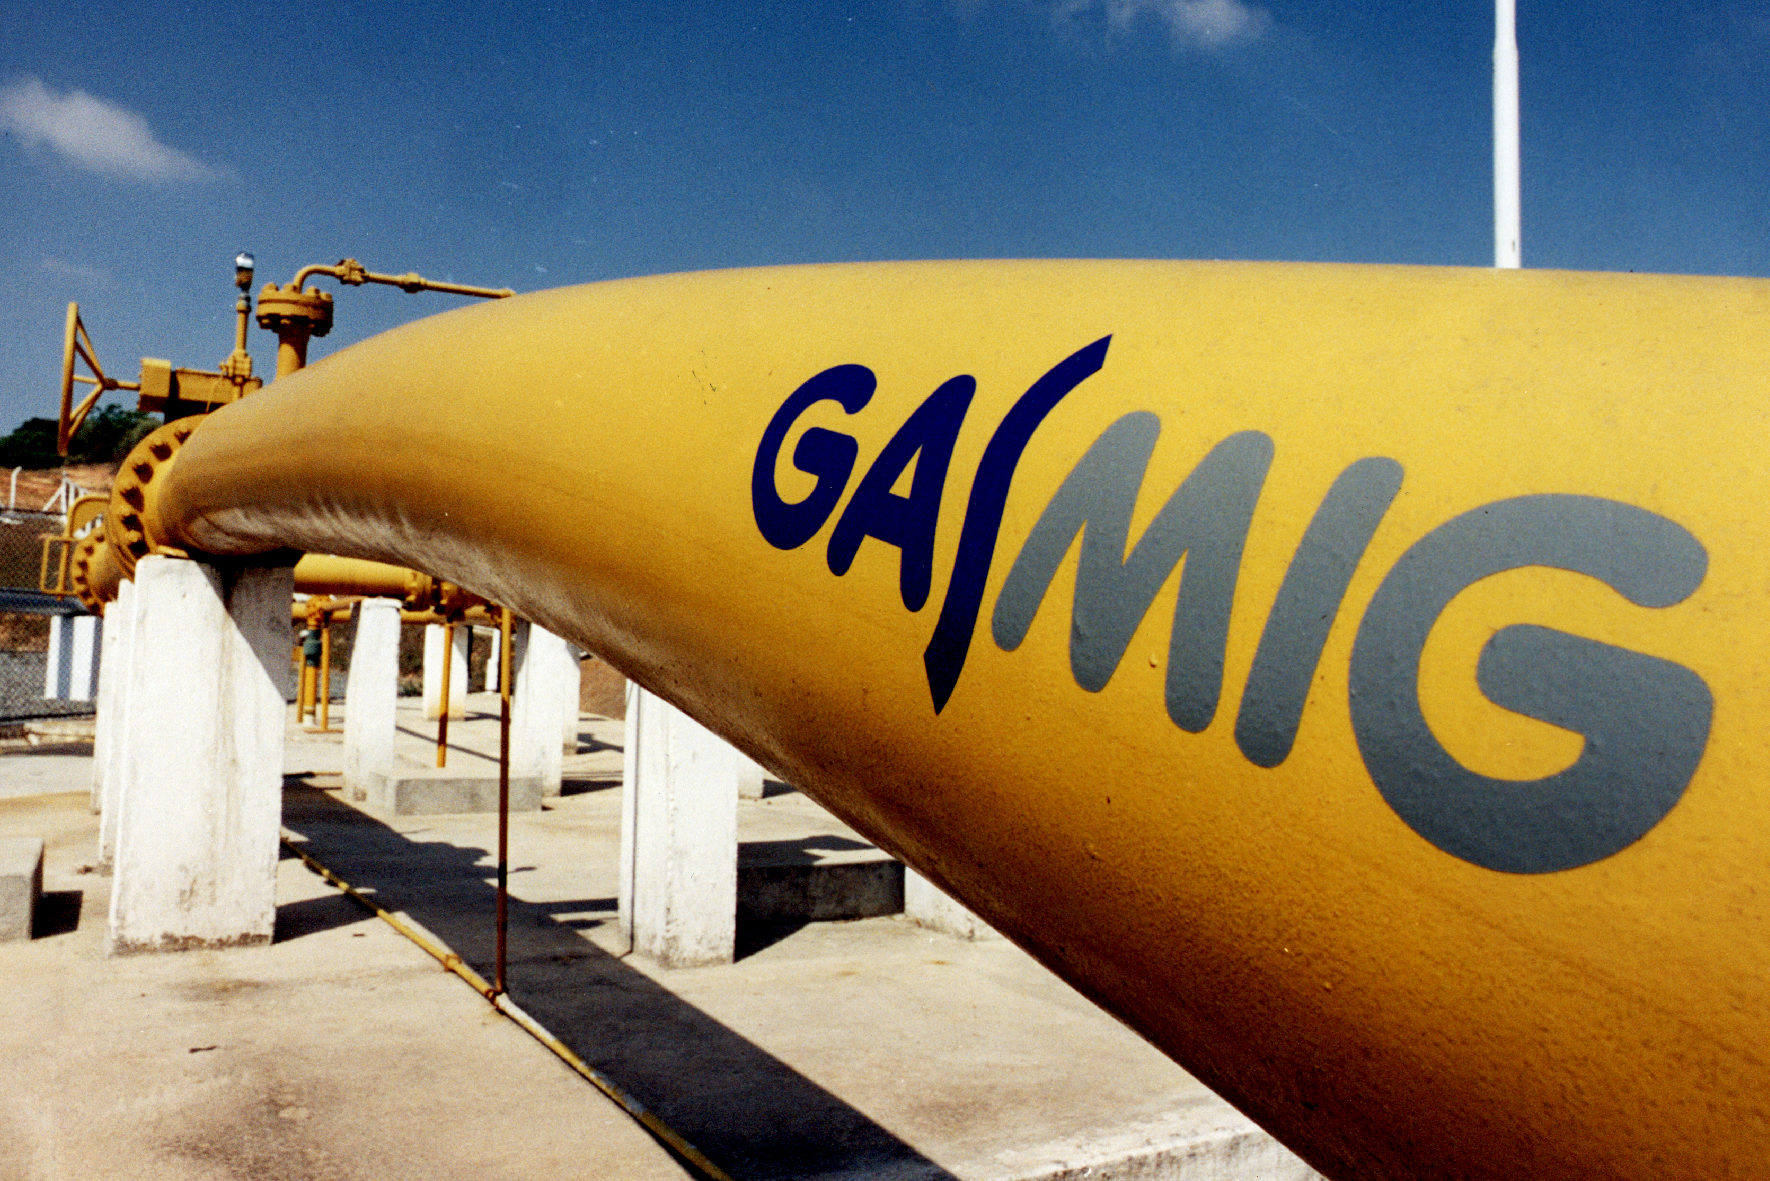 Multinacional Shell fecha contrato de suprimento de gás natural com a distribuidora mineira Gasmig. Na imagem: Tubulação de gás natural na cor amarela da Gasmig (Foto: Divulgação)